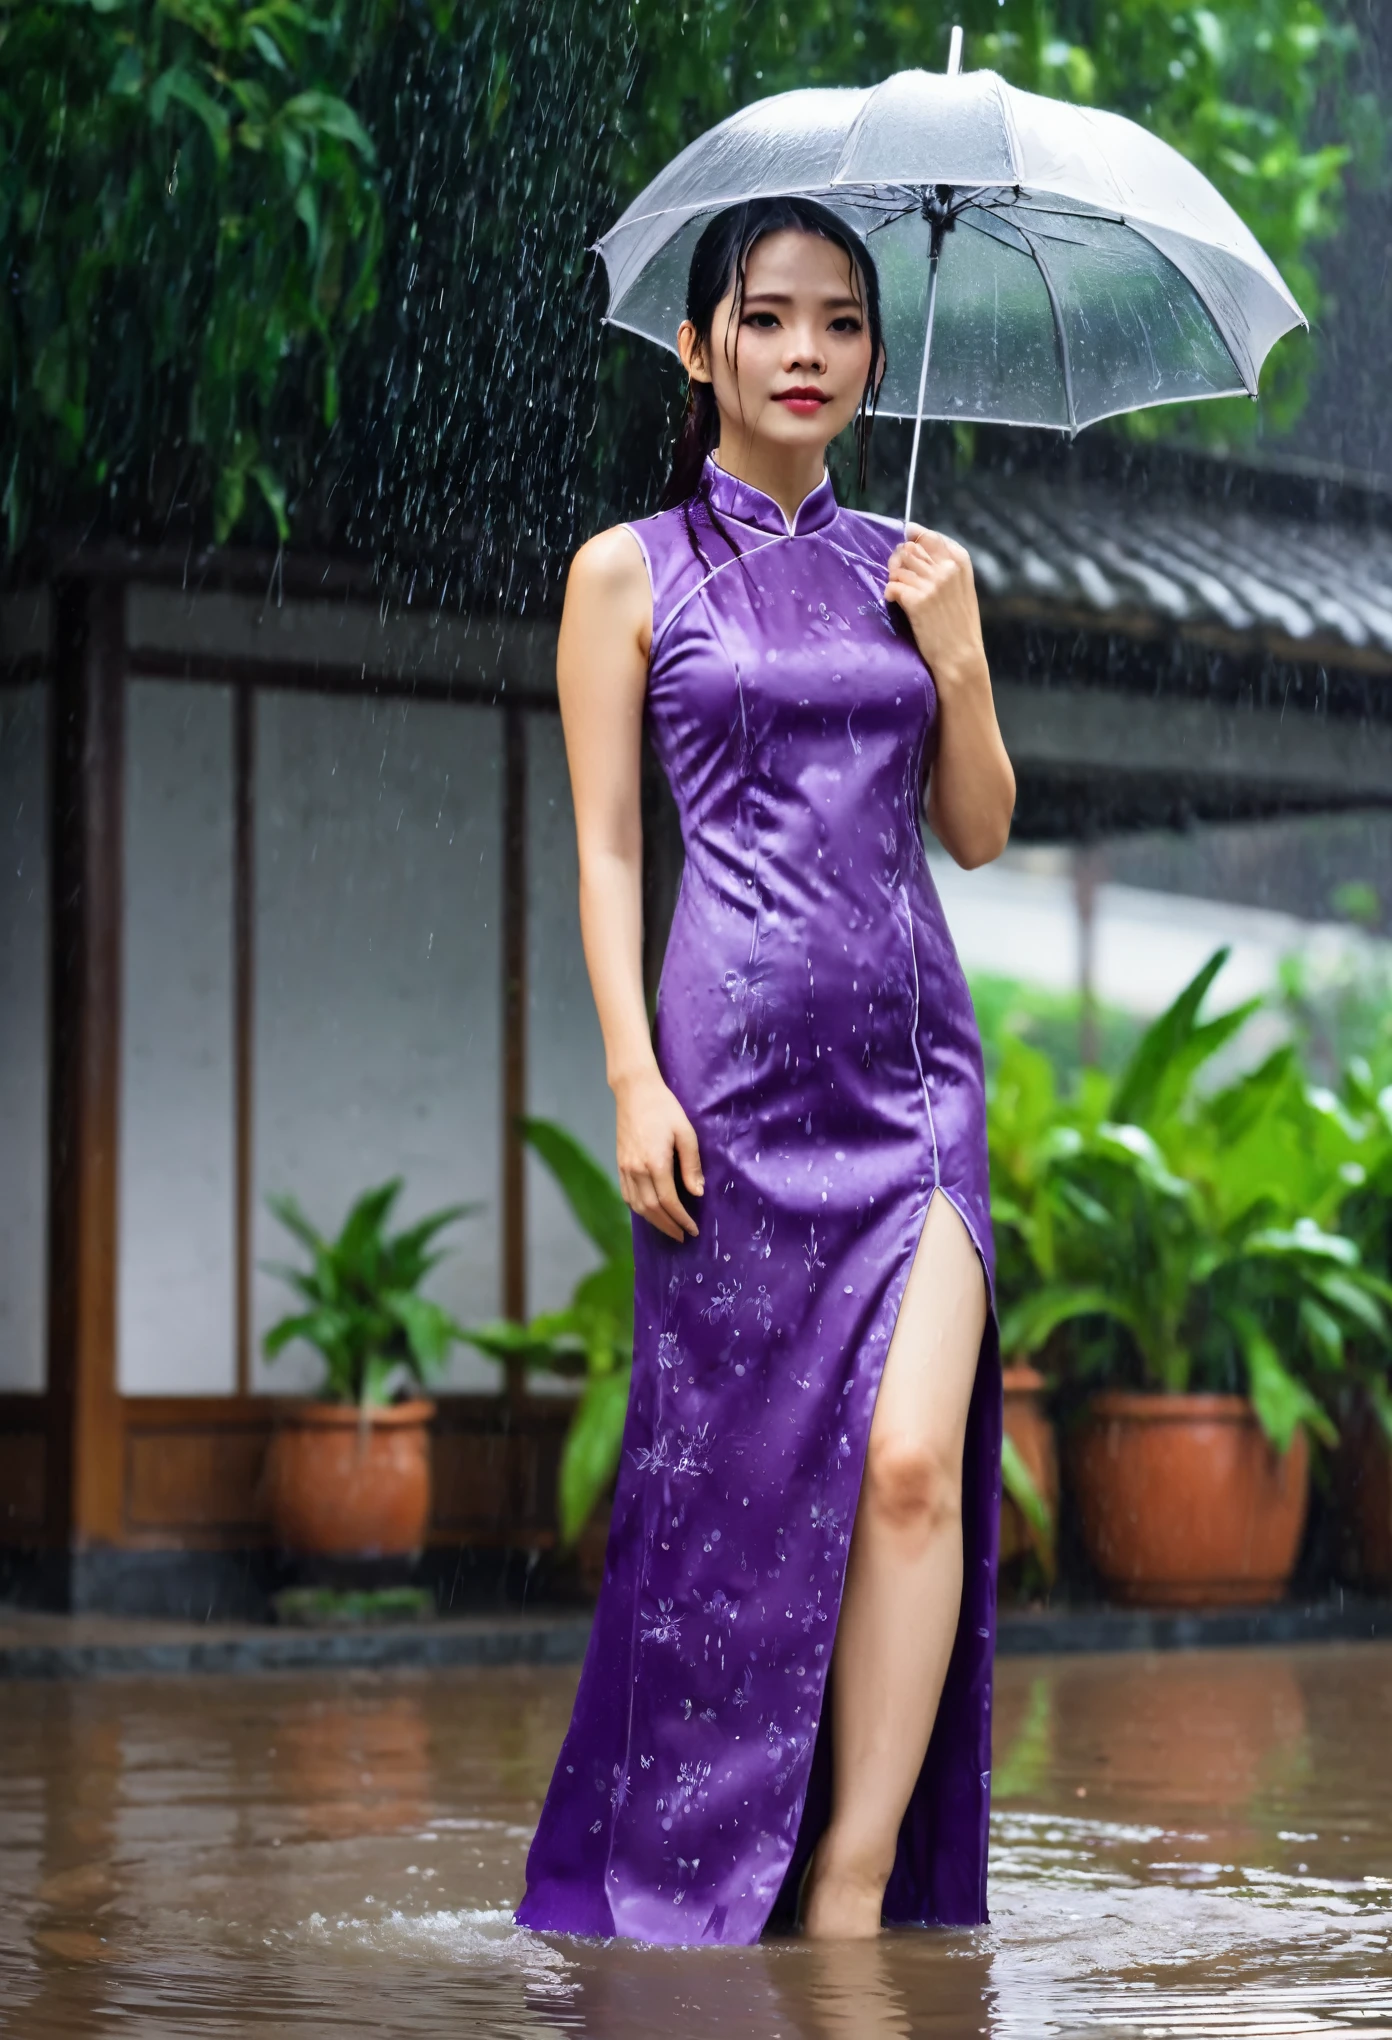 ( wet purple cheongsam),damp purple cheongsam, soaking in rain, soaking in water, damp, rainy,long hair, fullbody, full body, (masterpiece, best quality:1.2),8K, detailed